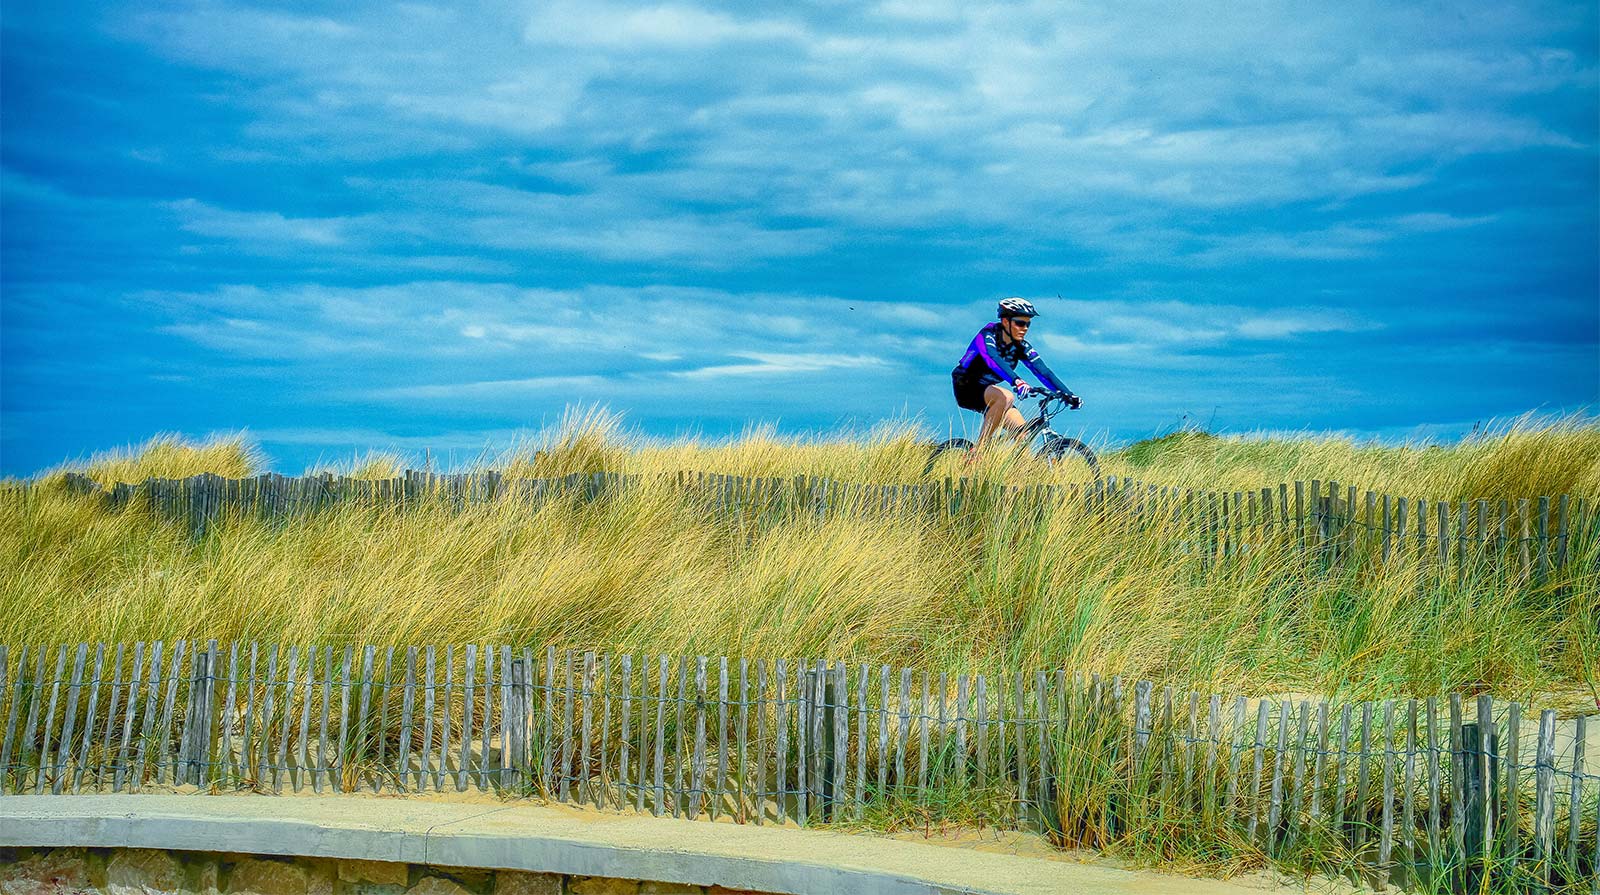 Cycliste sur une dune en bord de mer à Oléron